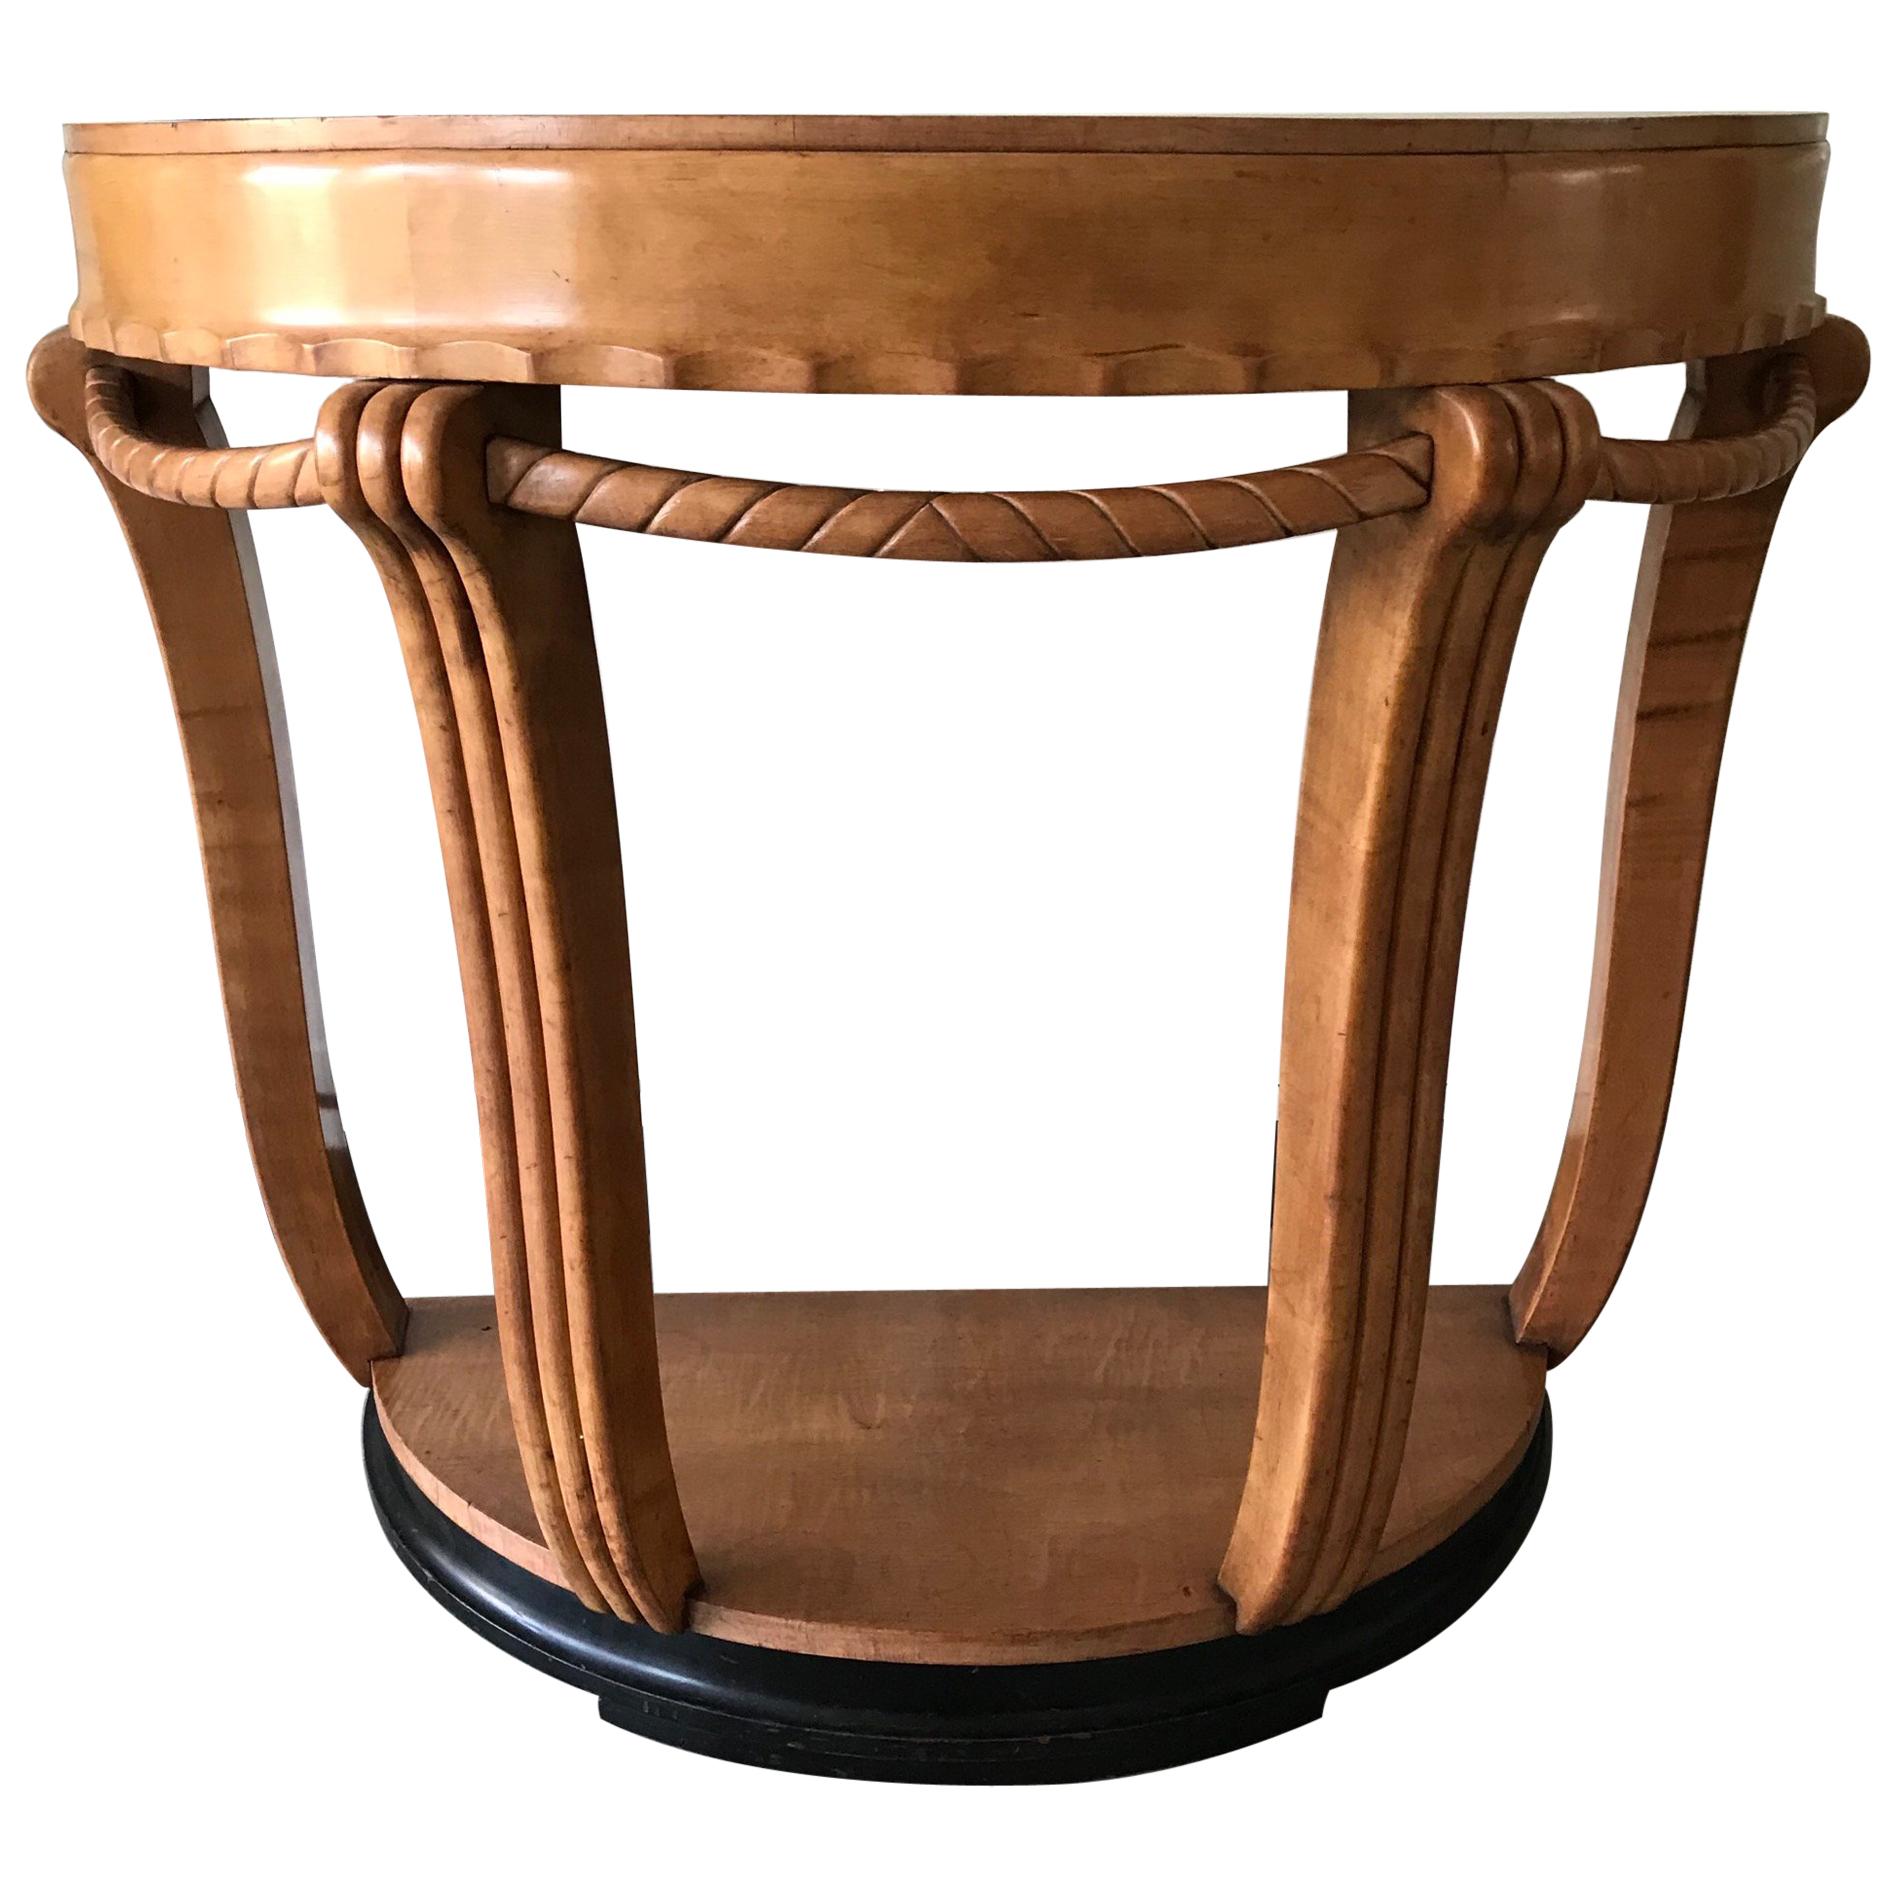 Grande et élégante console/table d'appoint Art déco semi circulaire en bois de hêtre teinté